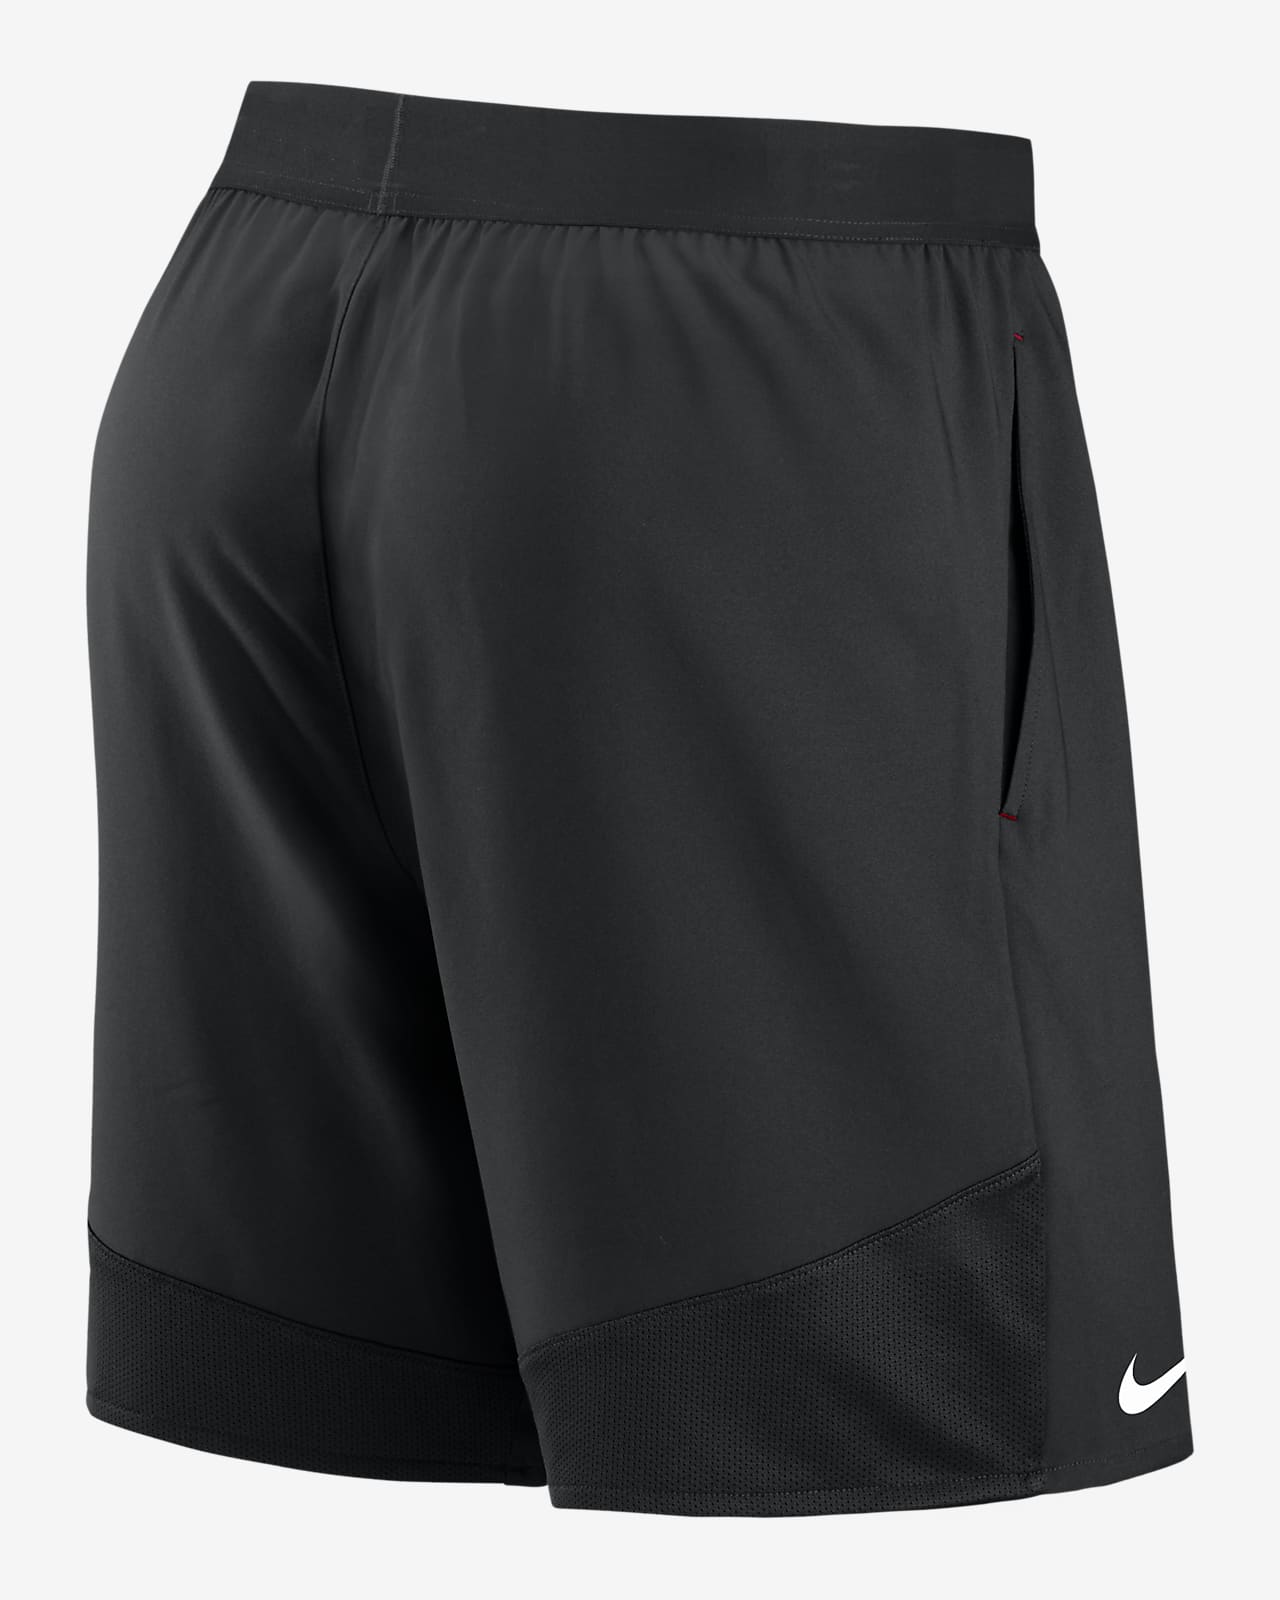 Shorts para Nike Dri-FIT (NFL Falcons). Nike.com